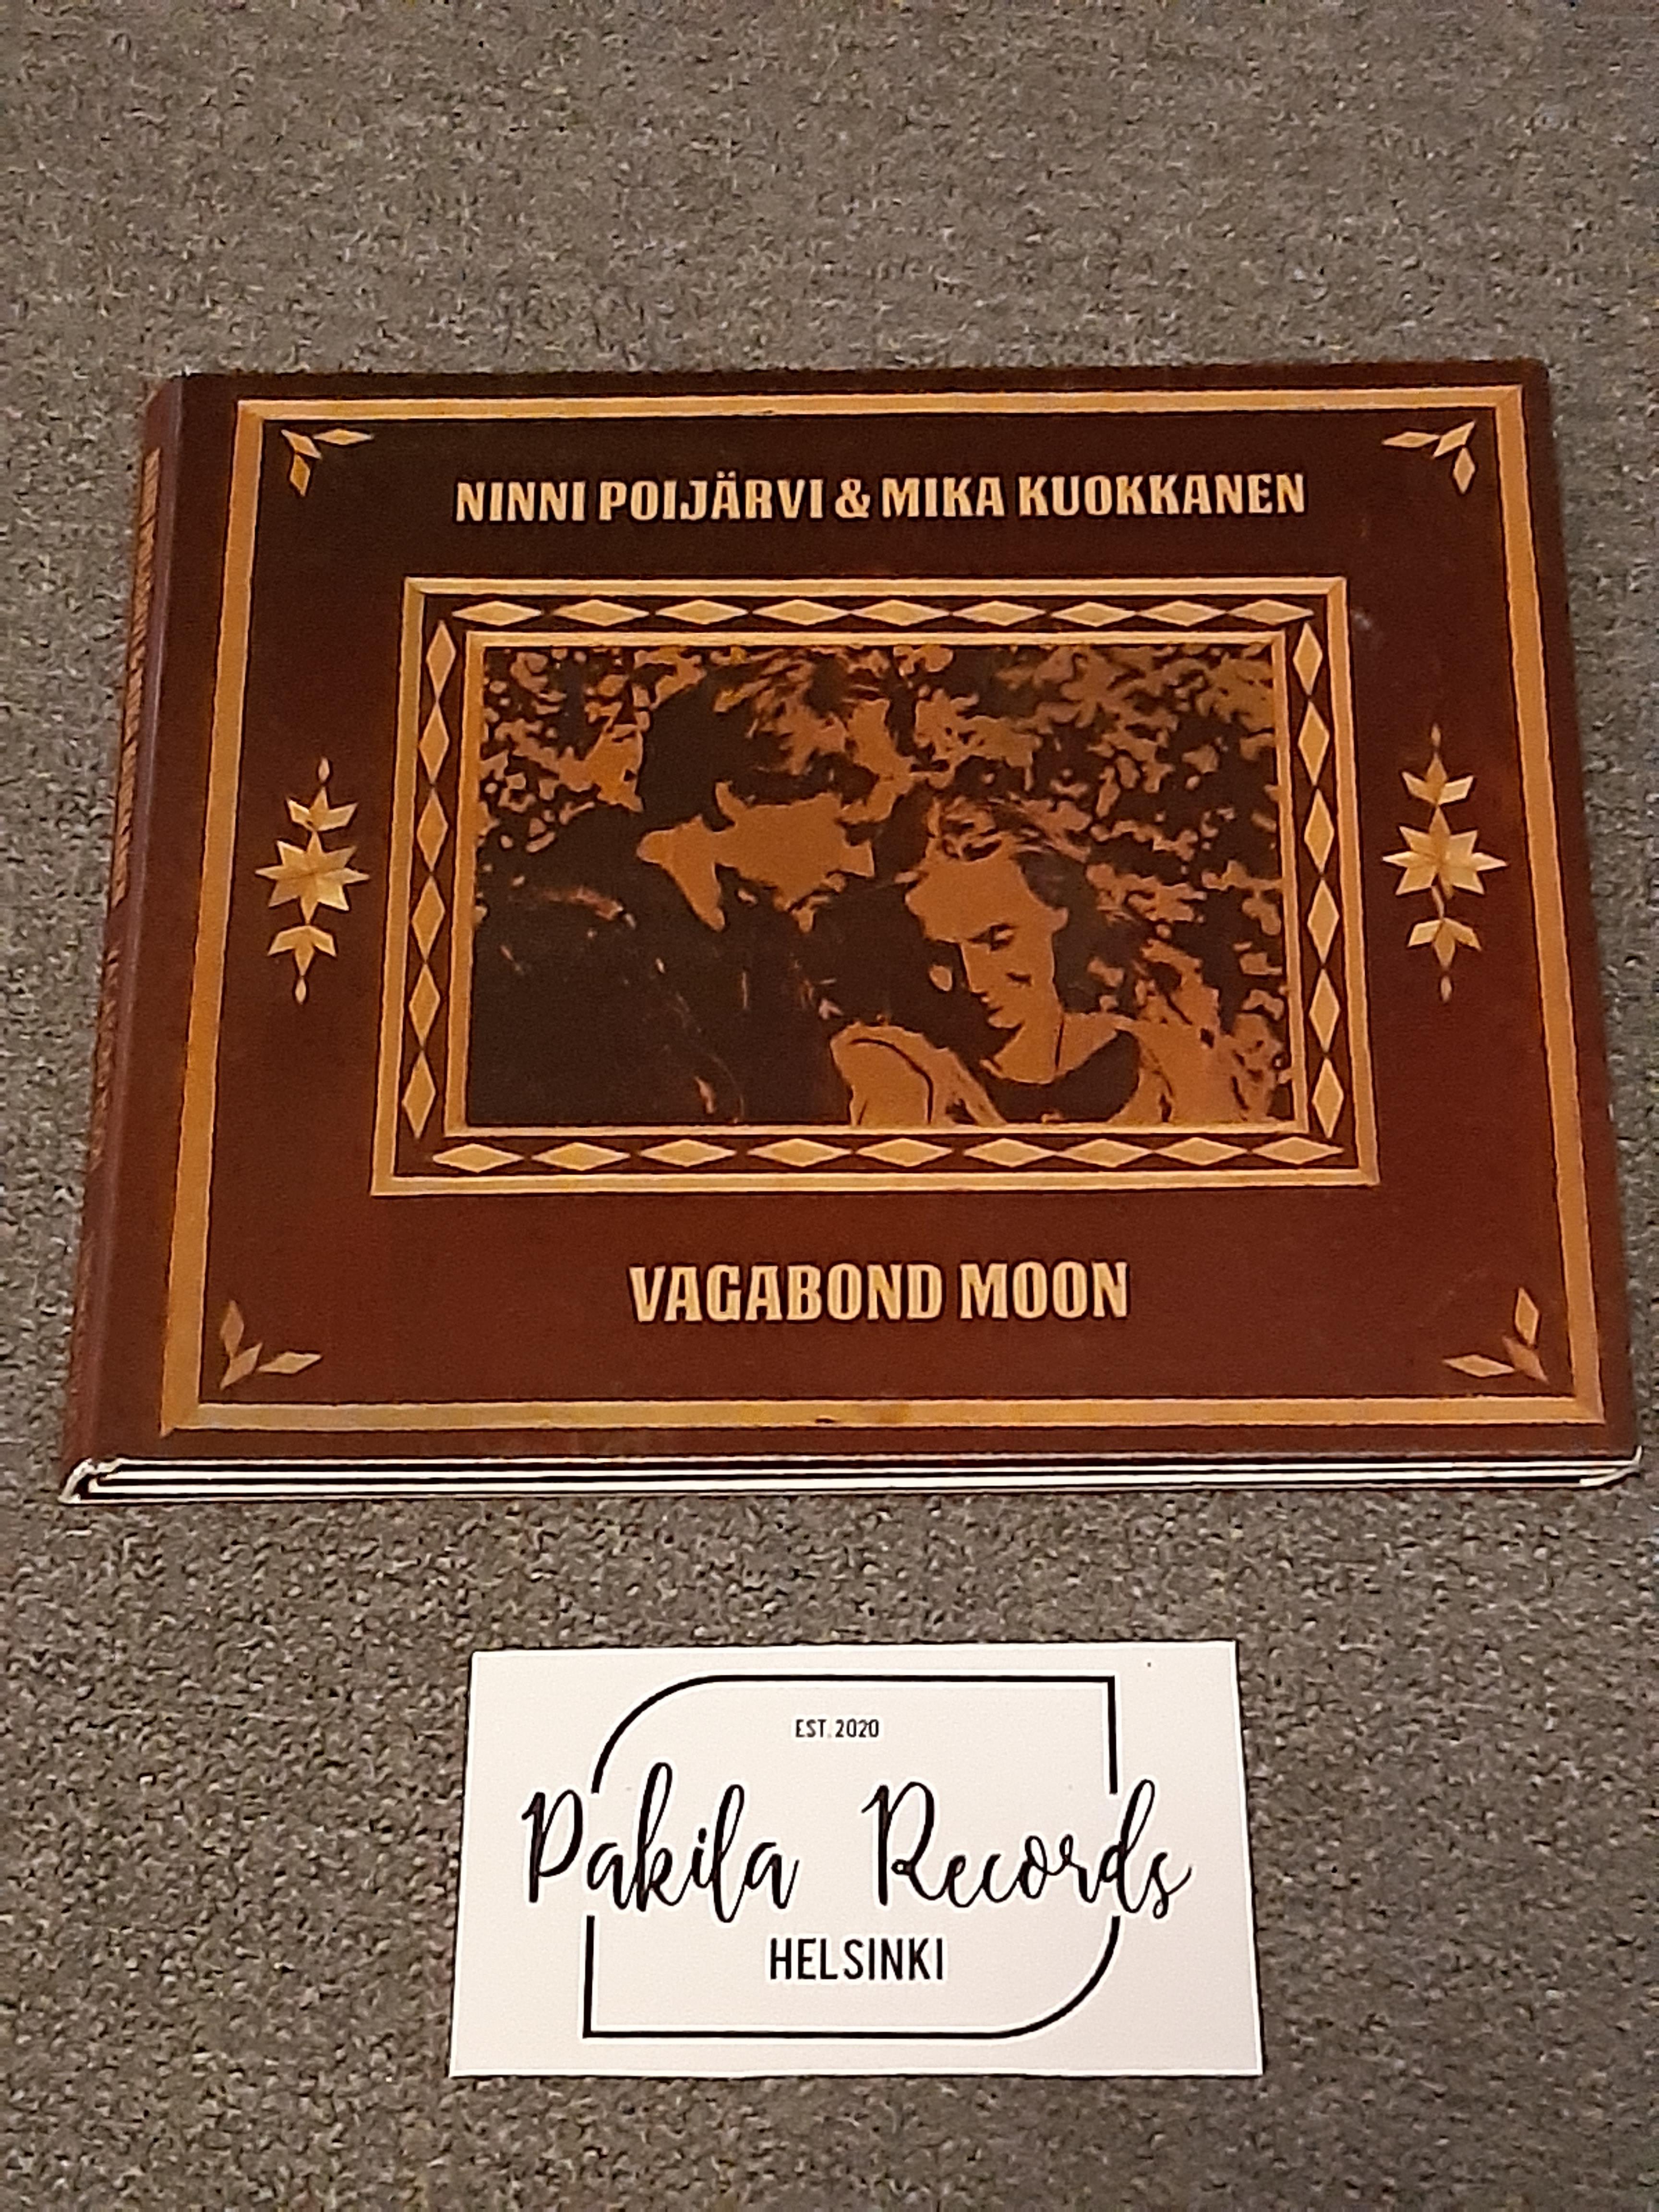 Ninni Poijärvi & Mika Kuokkanen - Vagabond Moon - CD (käytetty)